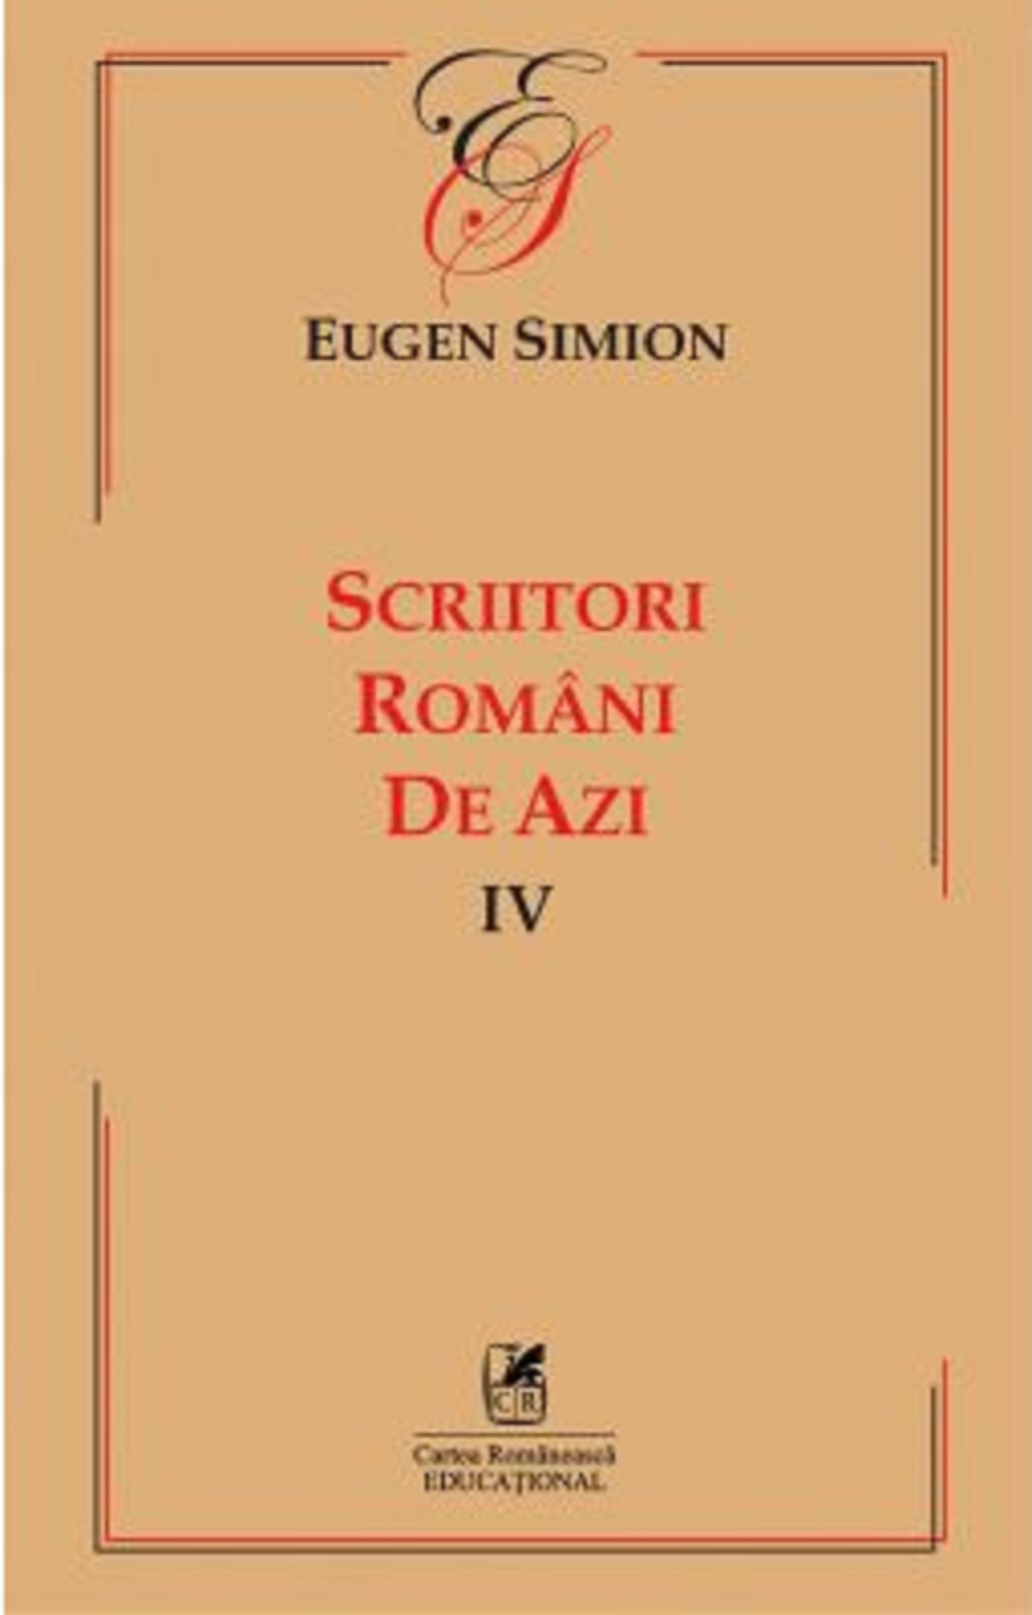 Scriitorii romani de azi IV | Eugen Simion Cartea Romaneasca poza 2022